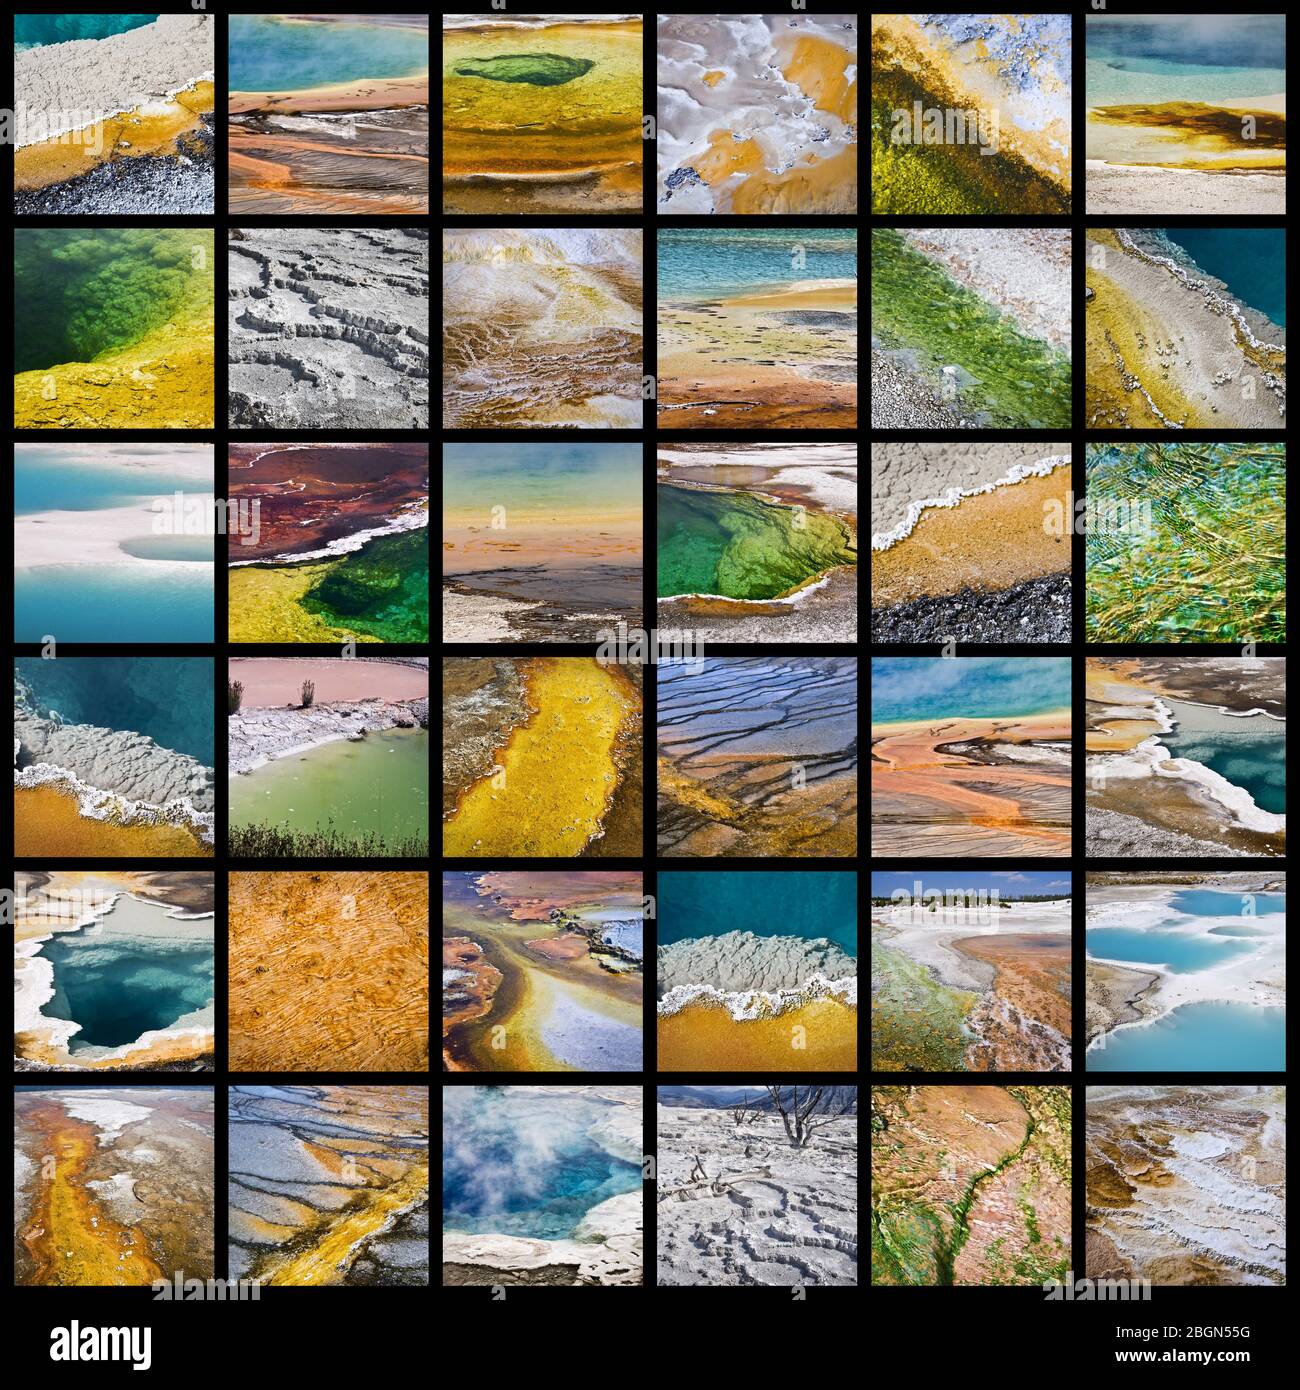 Collage de sources chaudes colorées dans le parc national de Yellowstone, États-Unis Banque D'Images